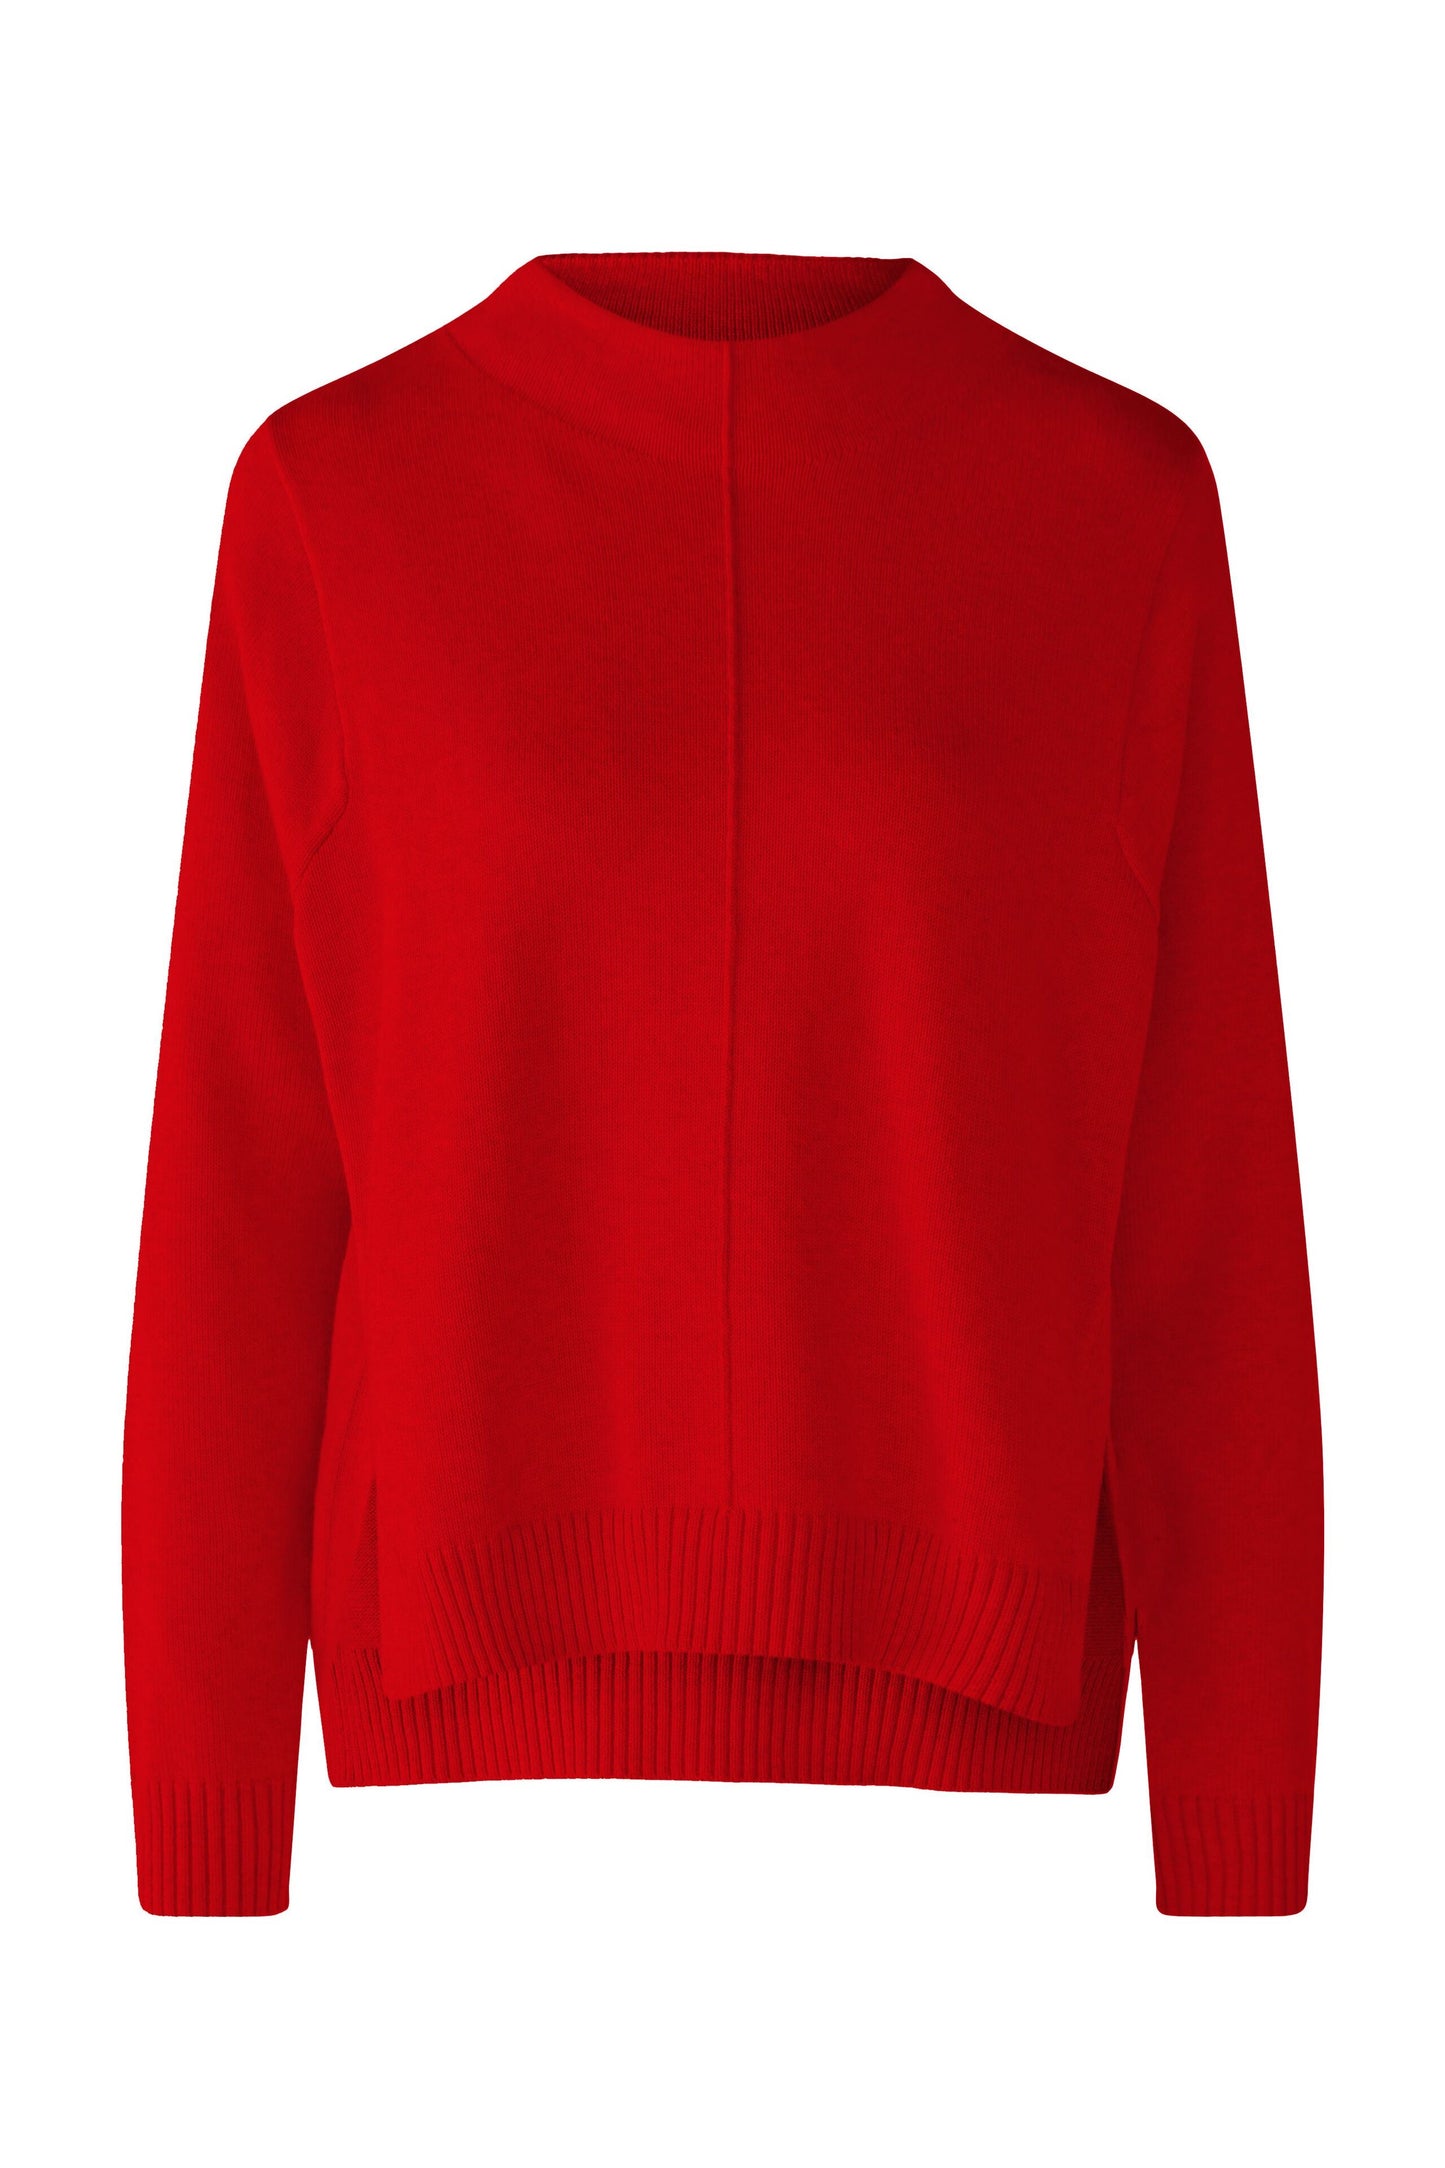 Oui Longline Red Sweater